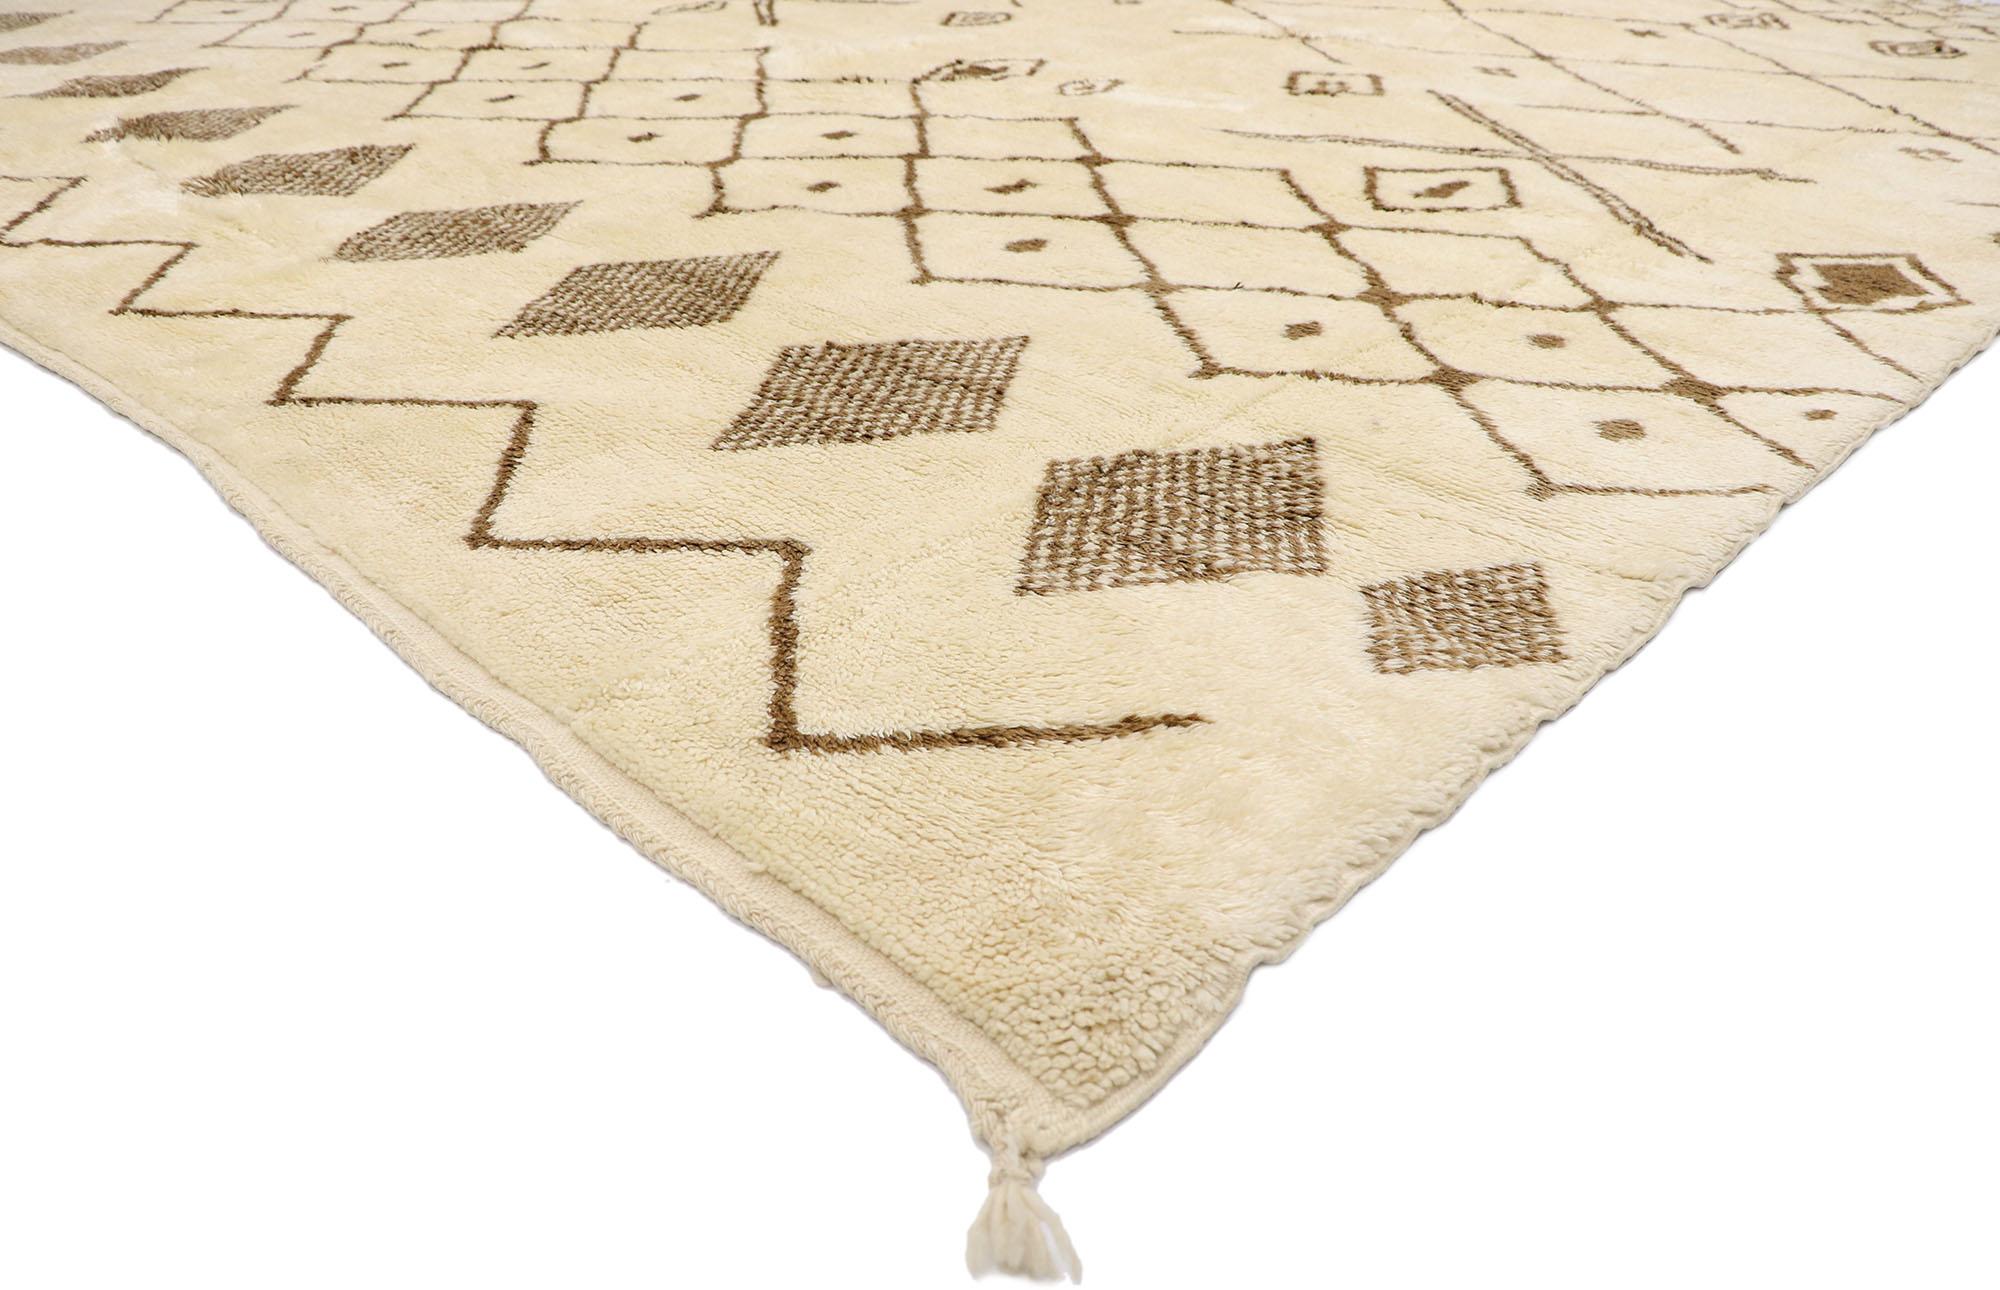 21141 Grand tapis marocain berbère neutre, 11'11 x 13'02.
Emulant le charme nomade avec des détails incroyables et une texture somptueuse, ce tapis marocain neutre en laine nouée à la main est une vision captivante de la beauté tissée. Le design